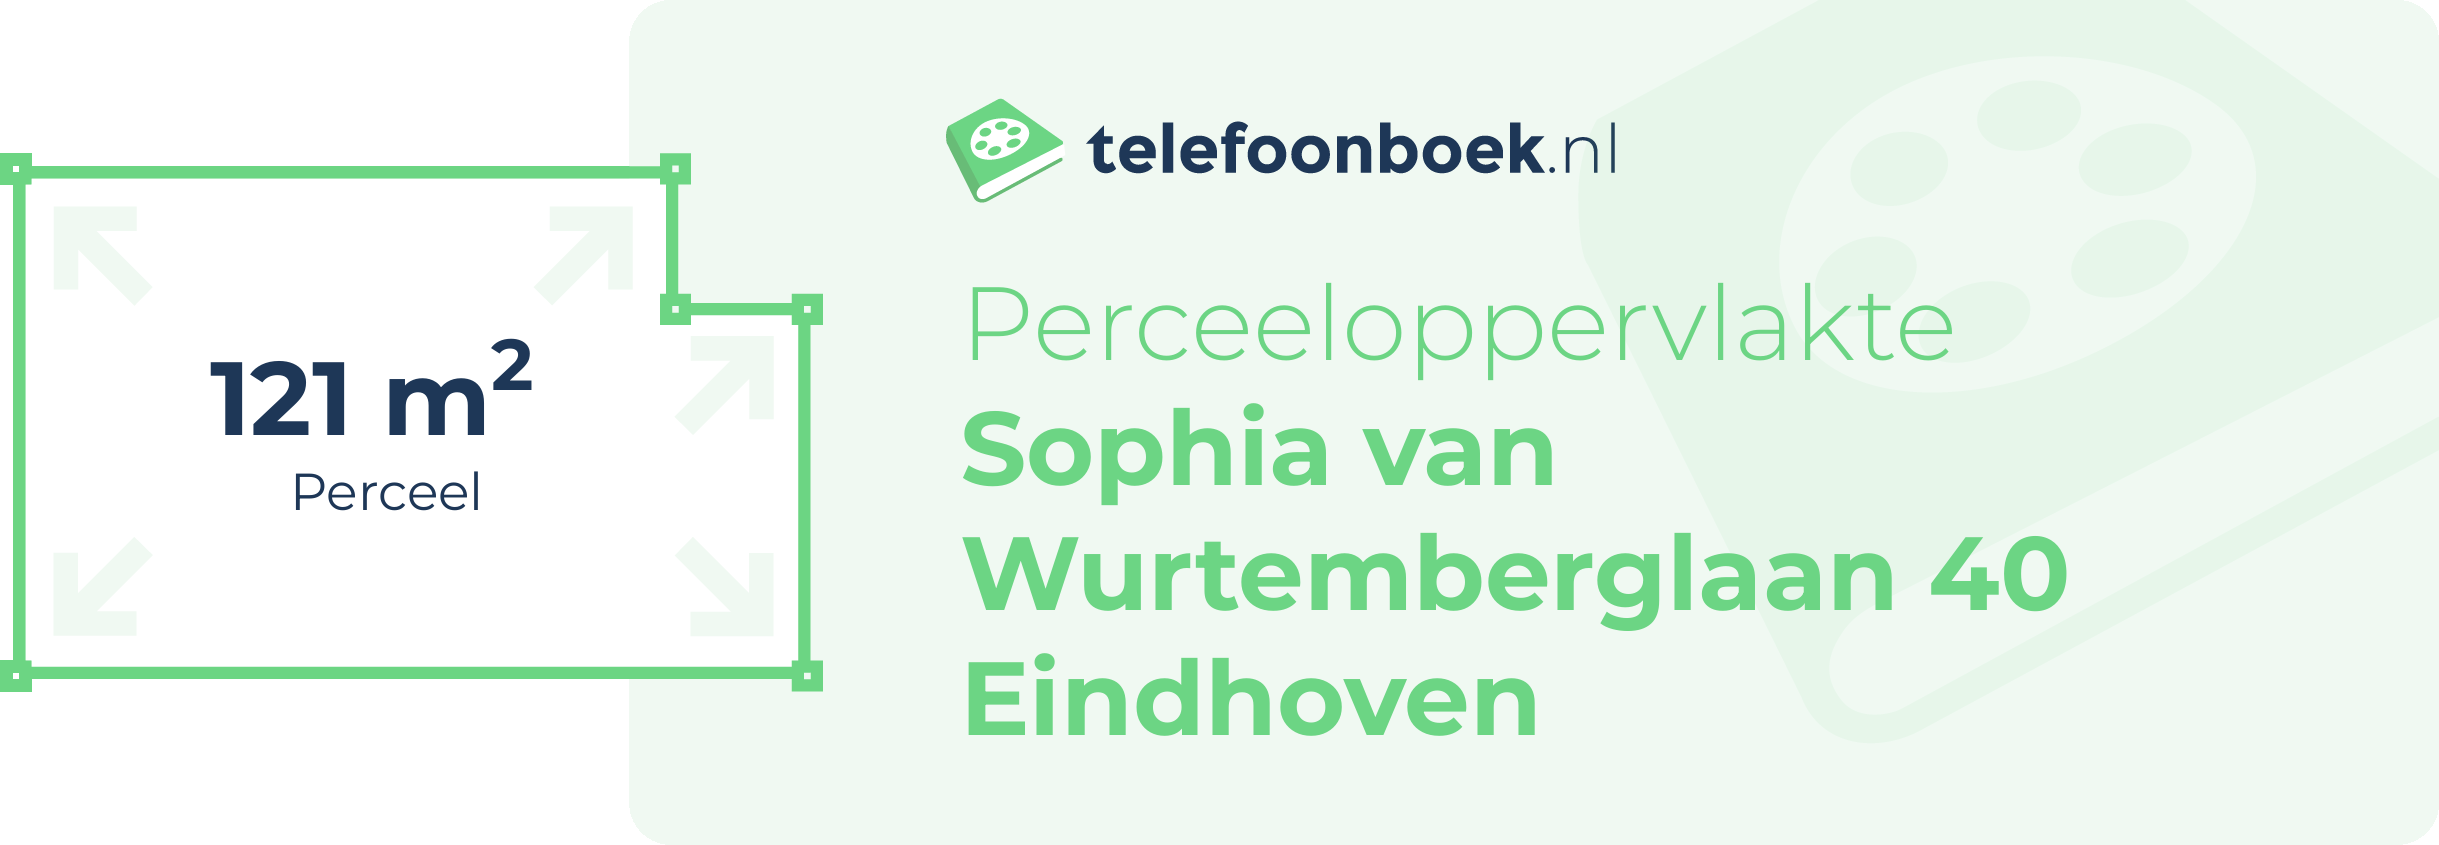 Perceeloppervlakte Sophia Van Wurtemberglaan 40 Eindhoven